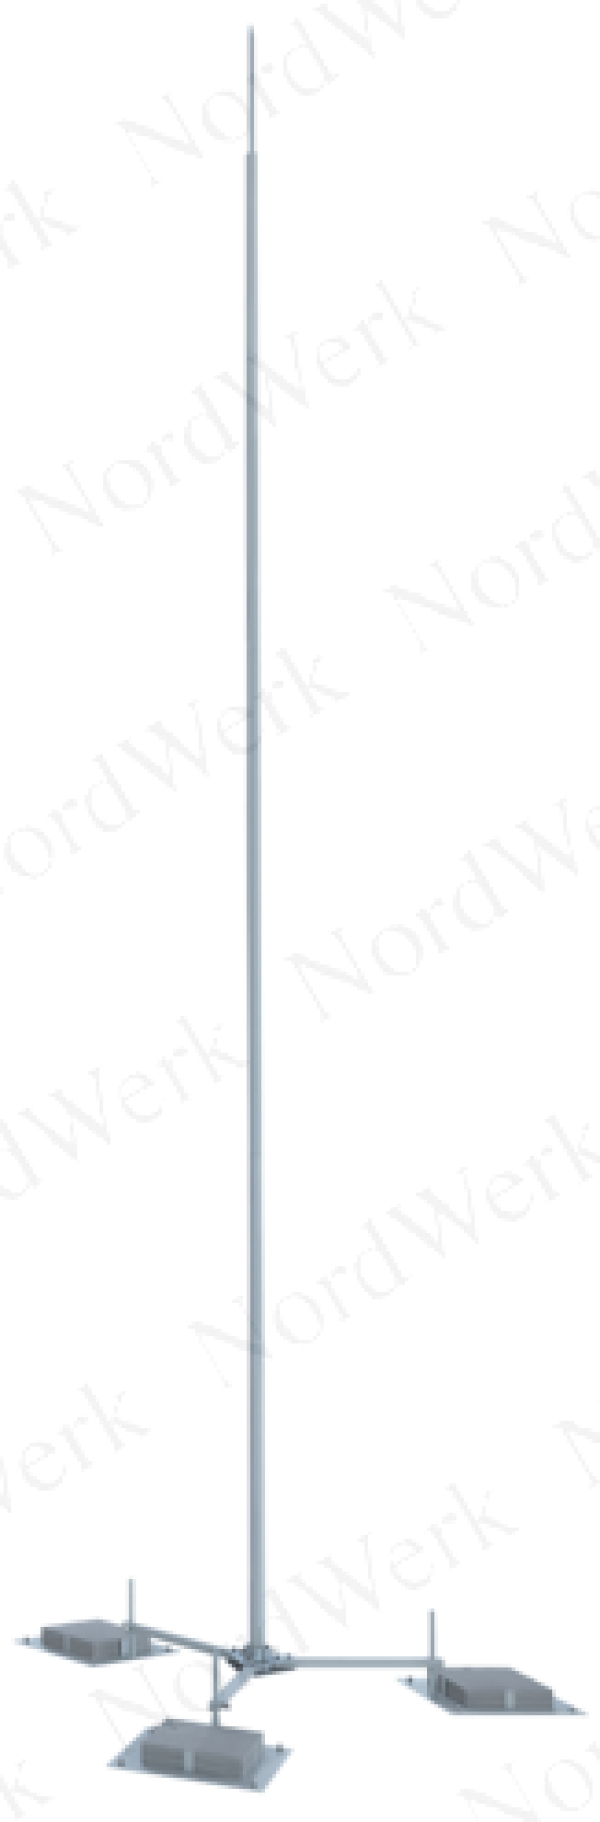 NordWerk МСАА-М-5,4-П – Молниеотвод высотой 5,4 метров для активных молниеприемников (алюминий; с основанием под плитку)